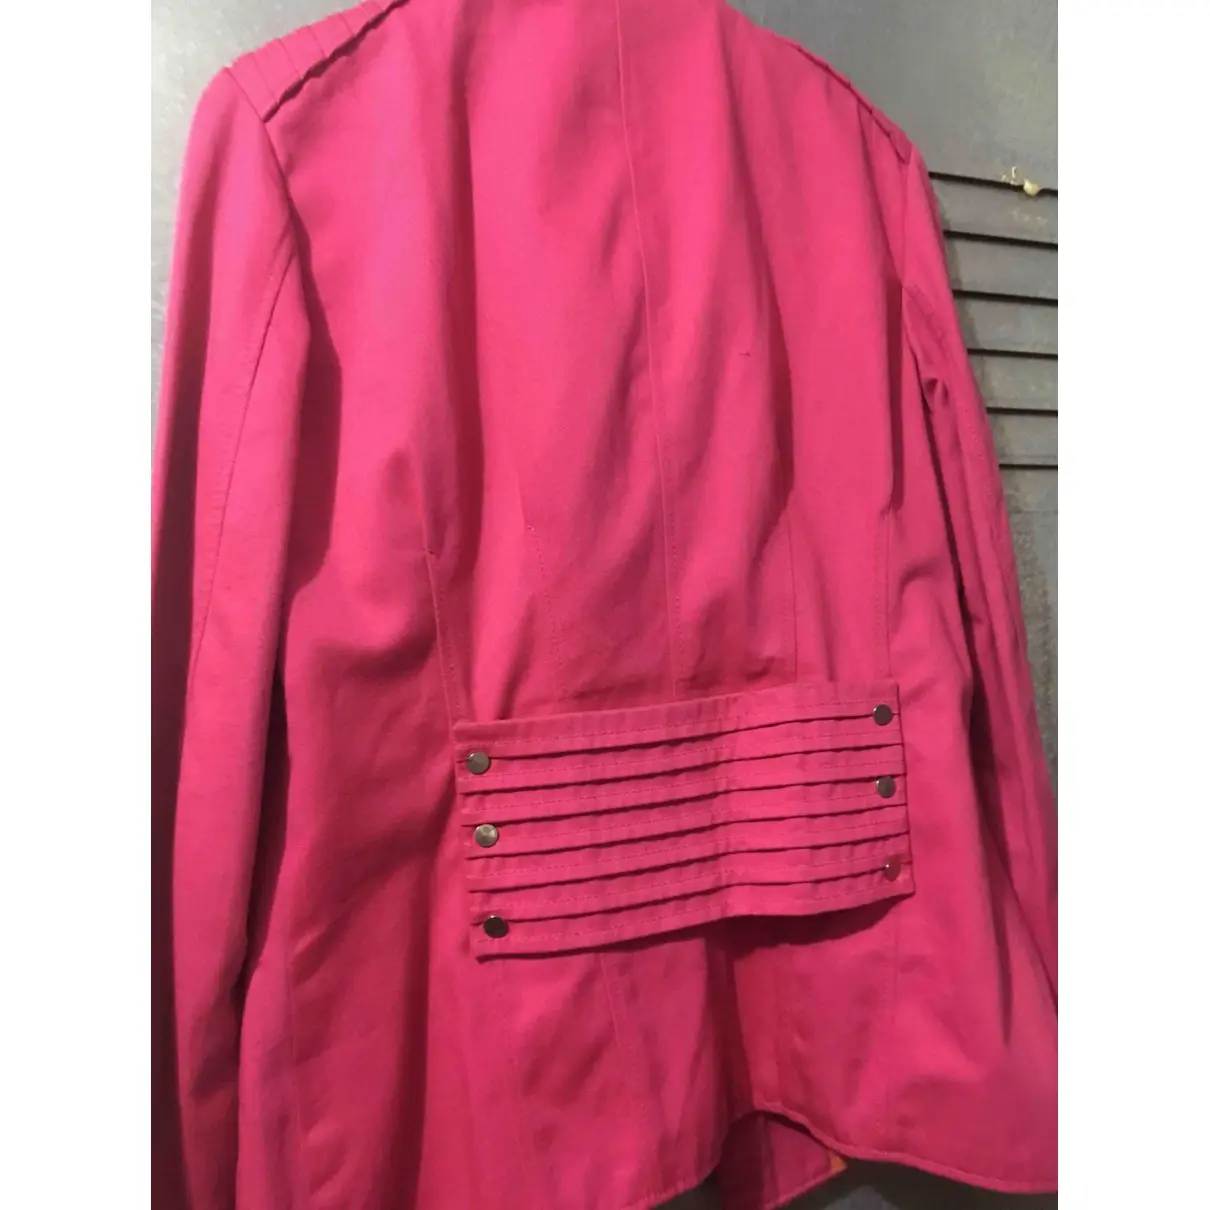 Buy Carolina Herrera Biker jacket online